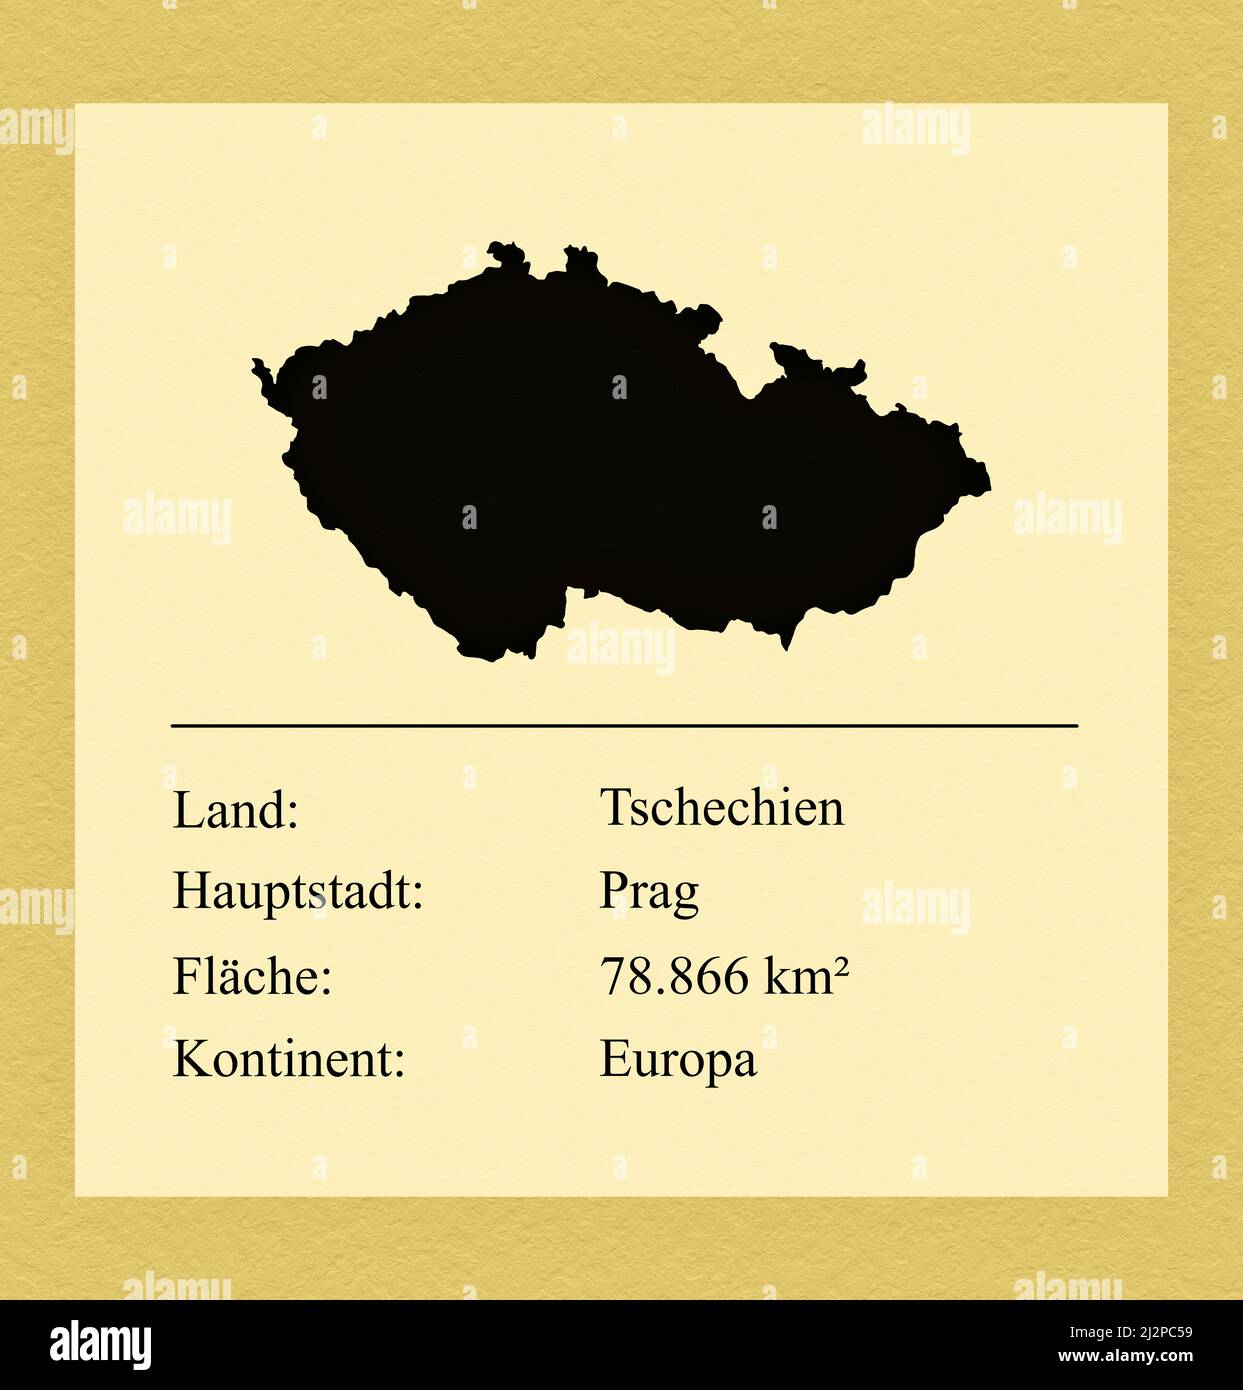 Umrisse des Landes Tschechechien, darunter ein kleiner Steckbrief mit Ländernamen, Hauptstadt, Fläche und Kontinent Foto Stock